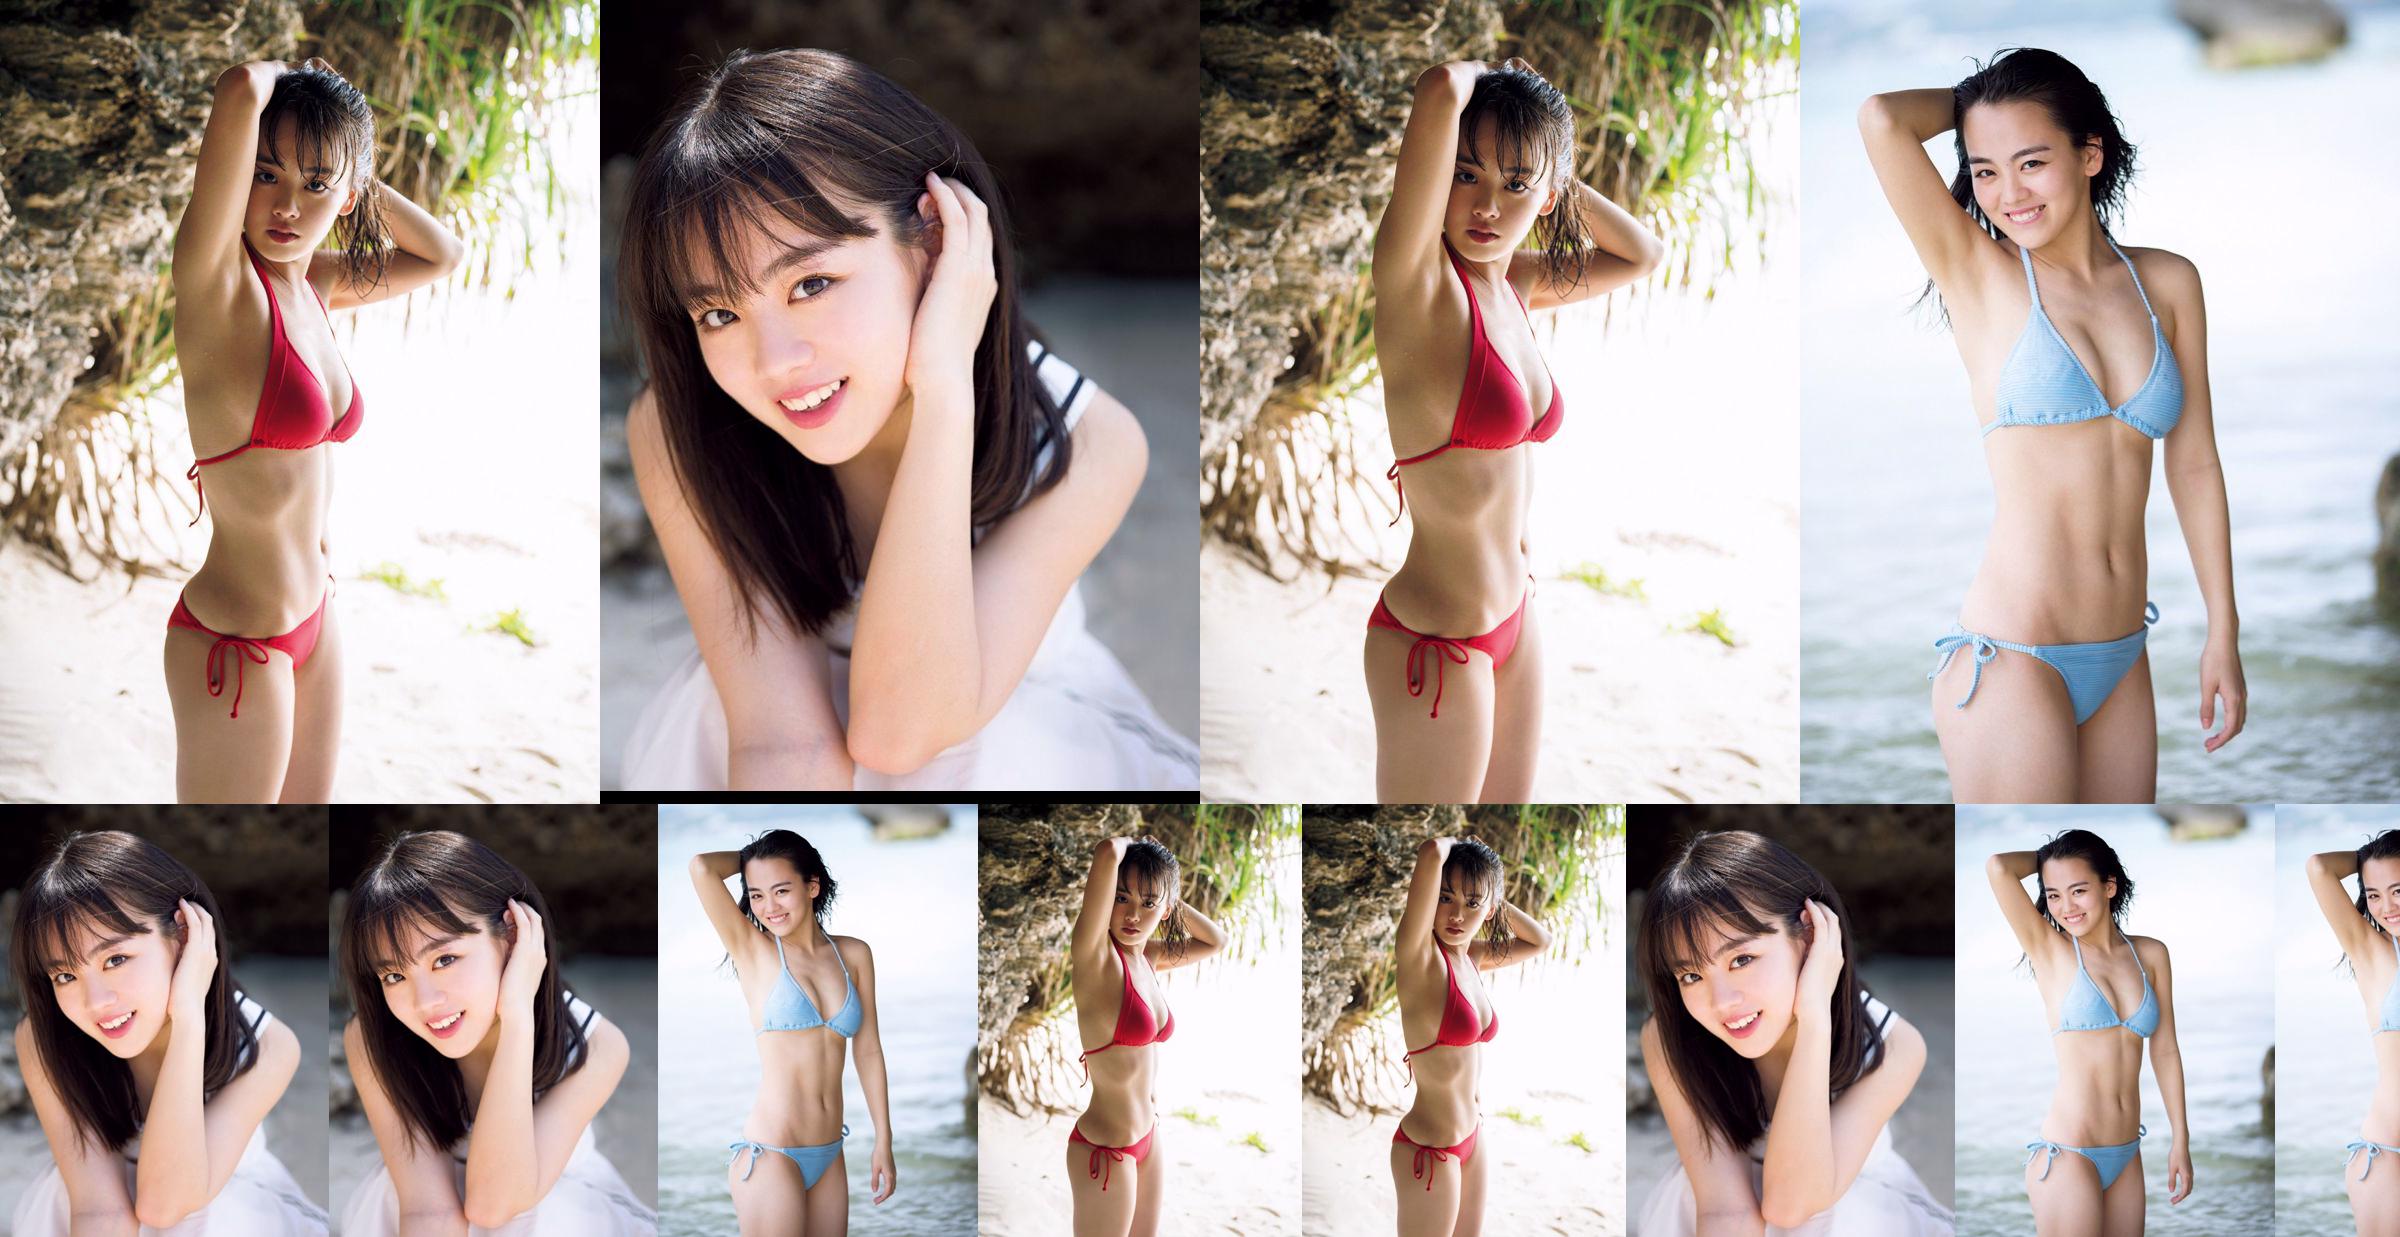 [VENERDI] Rikka Ihara << L'ex capitano della discoteca Tomioka High School debutta in bikini >> Foto No.2c69fb Pagina 2